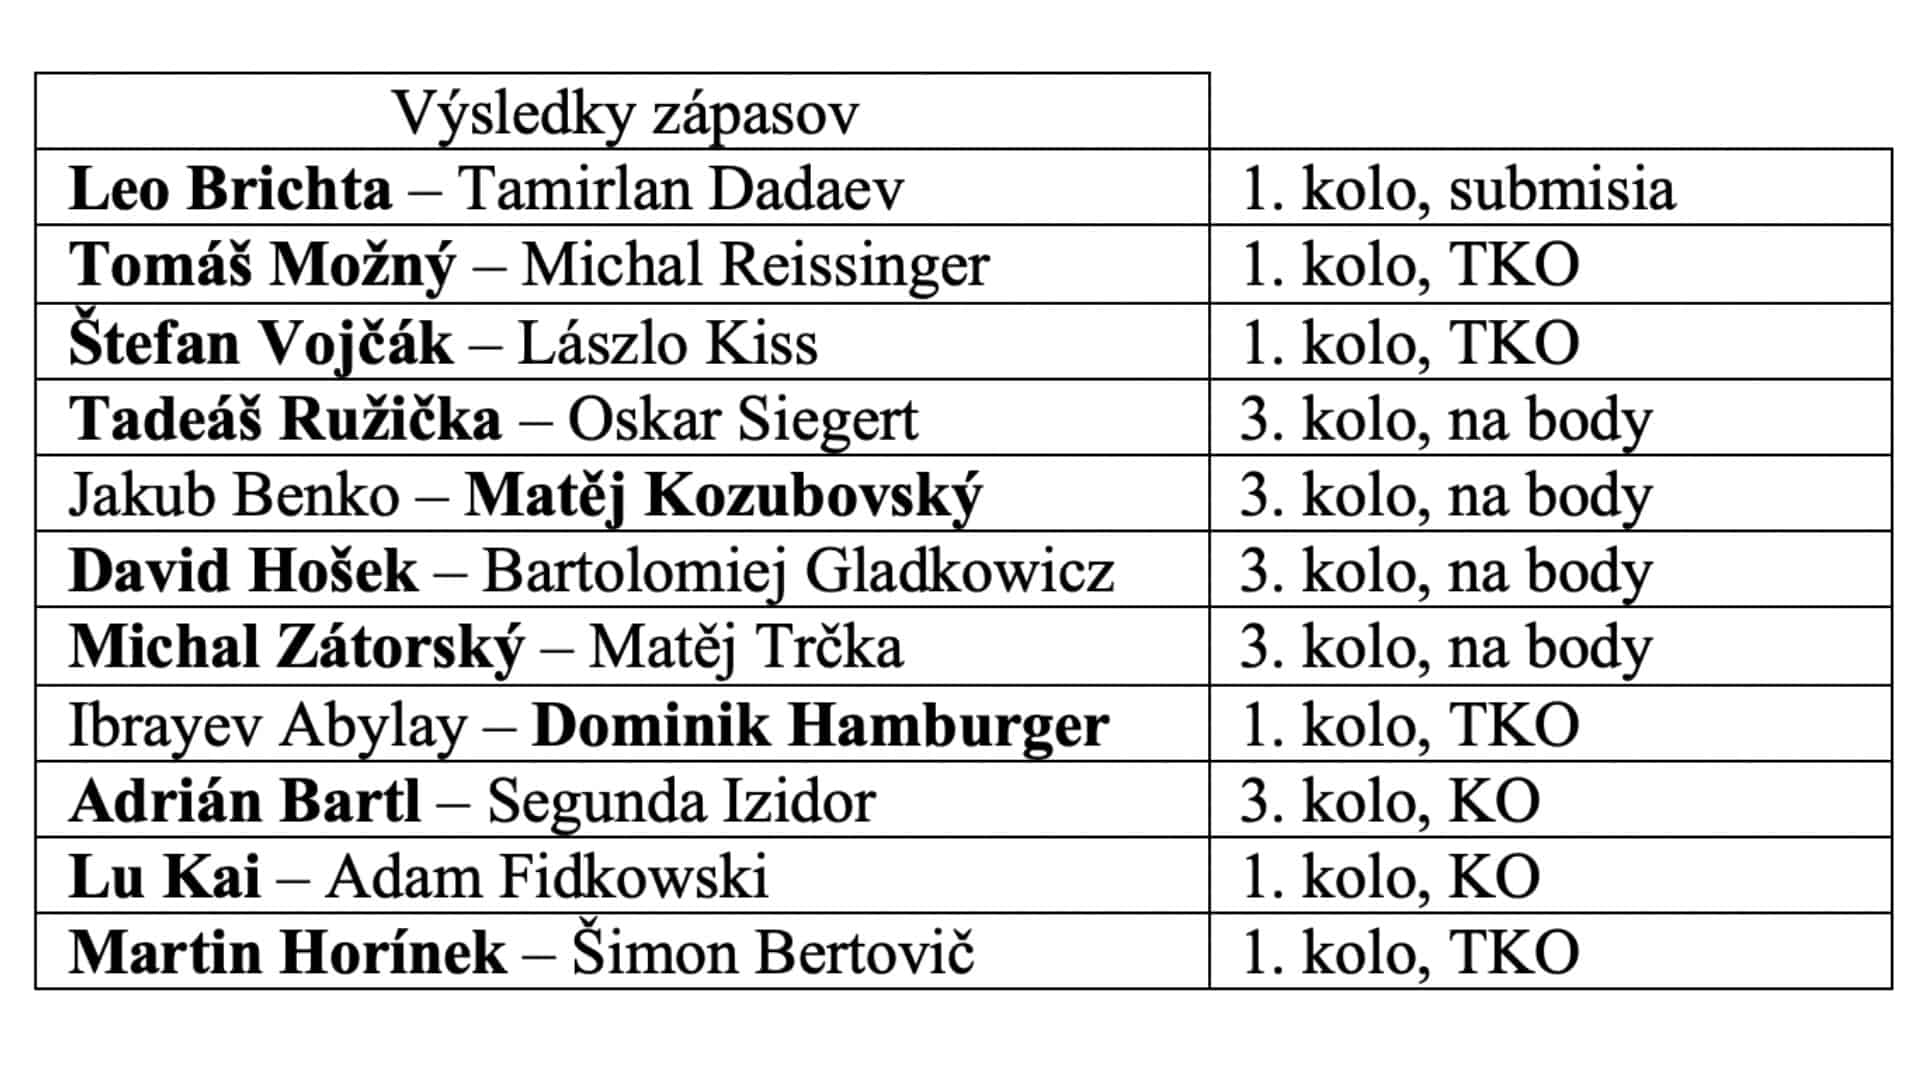 Ďalšie štyri zápasy, v ktorých zvíťazili Michal Zátorský, David Hošek, Matěj Kozubovský a Tadeáš Ružička, skončili po troch kolách s víťazstvom na body.